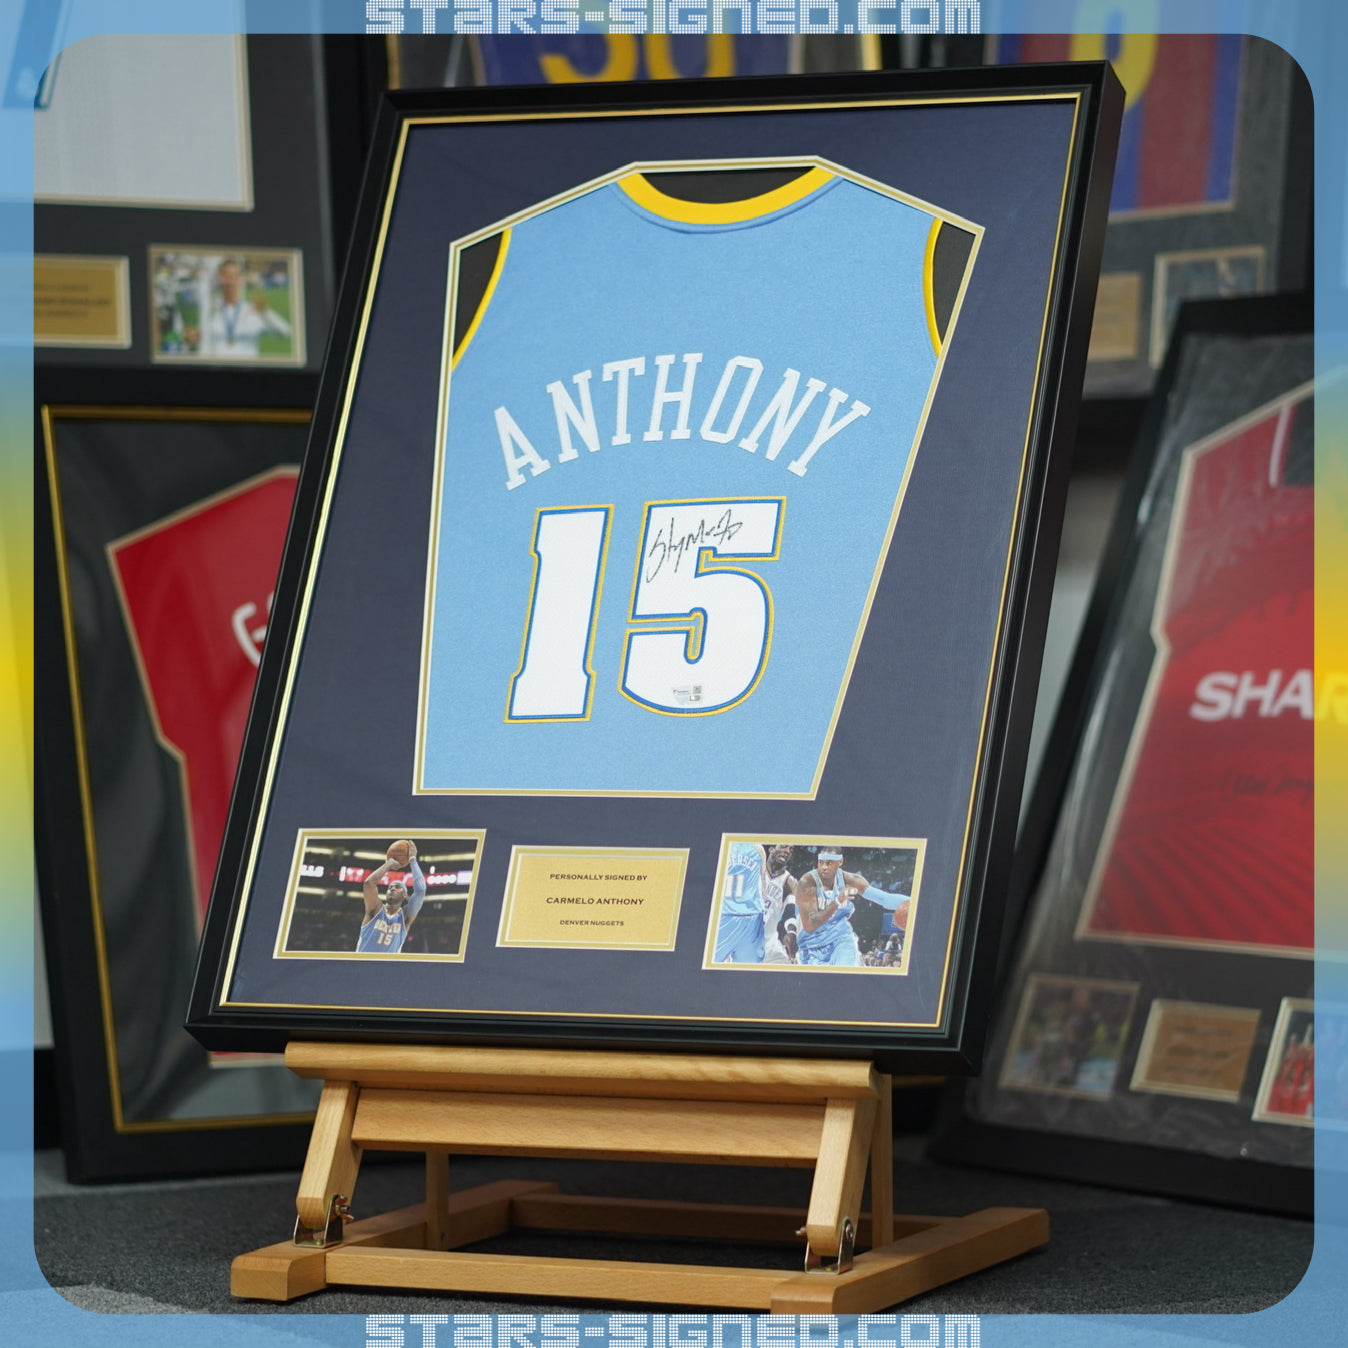 安東尼 Carmelo Anthony 丹佛金塊隊 M&N Authentic 球衣裱框配金線條外框(背簽)